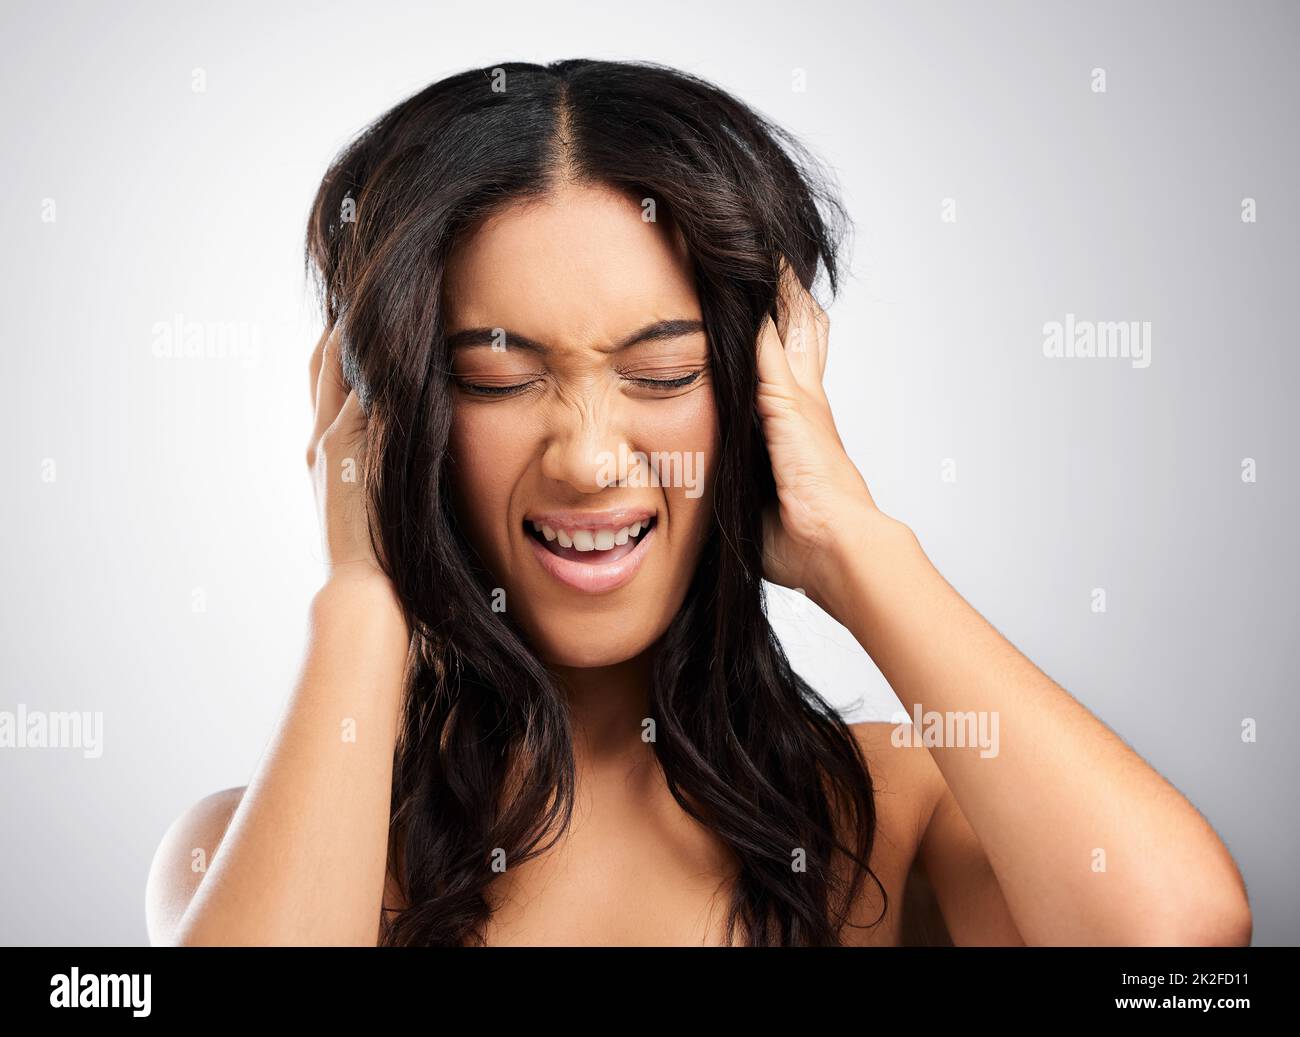 Ceneri pazzi sui capelli. Scatto ritagliato di una giovane donna attraente in posa in studio su uno sfondo grigio. Foto Stock